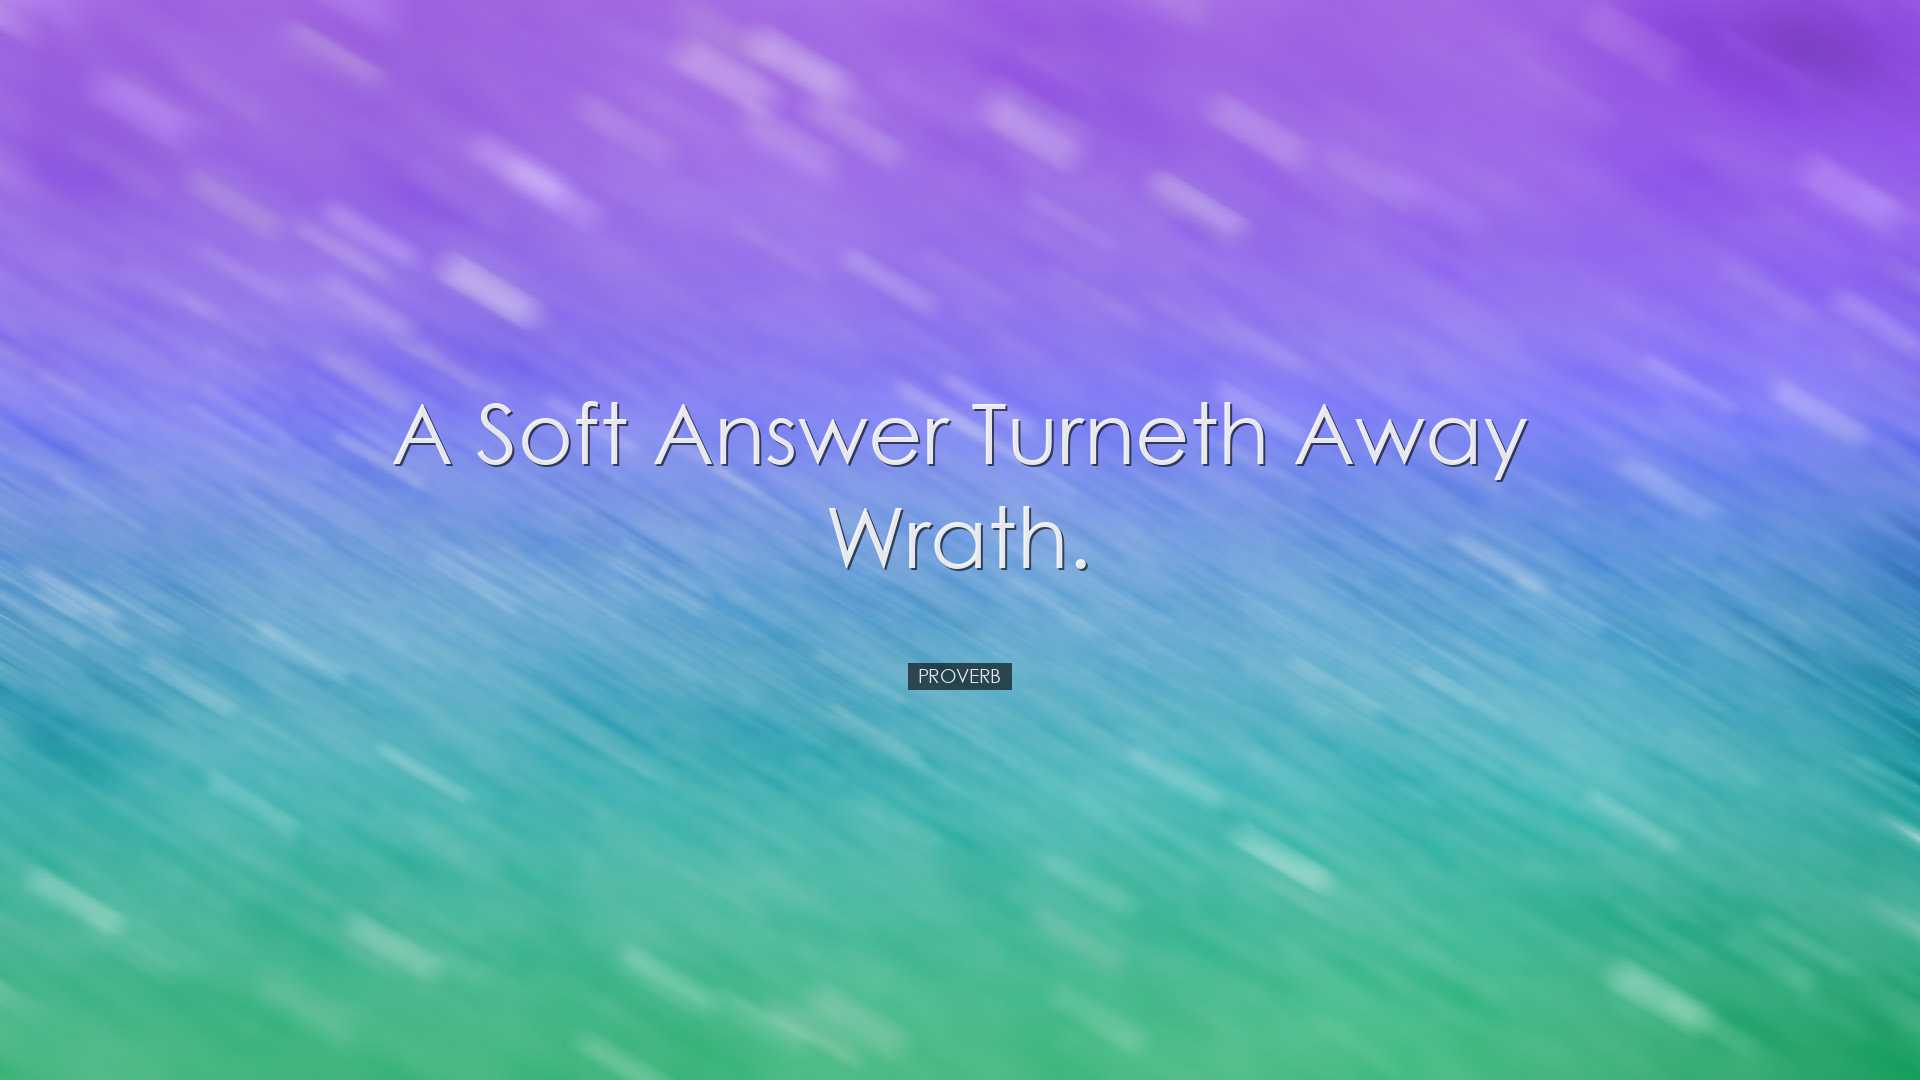 A soft answer turneth away wrath. - Proverb